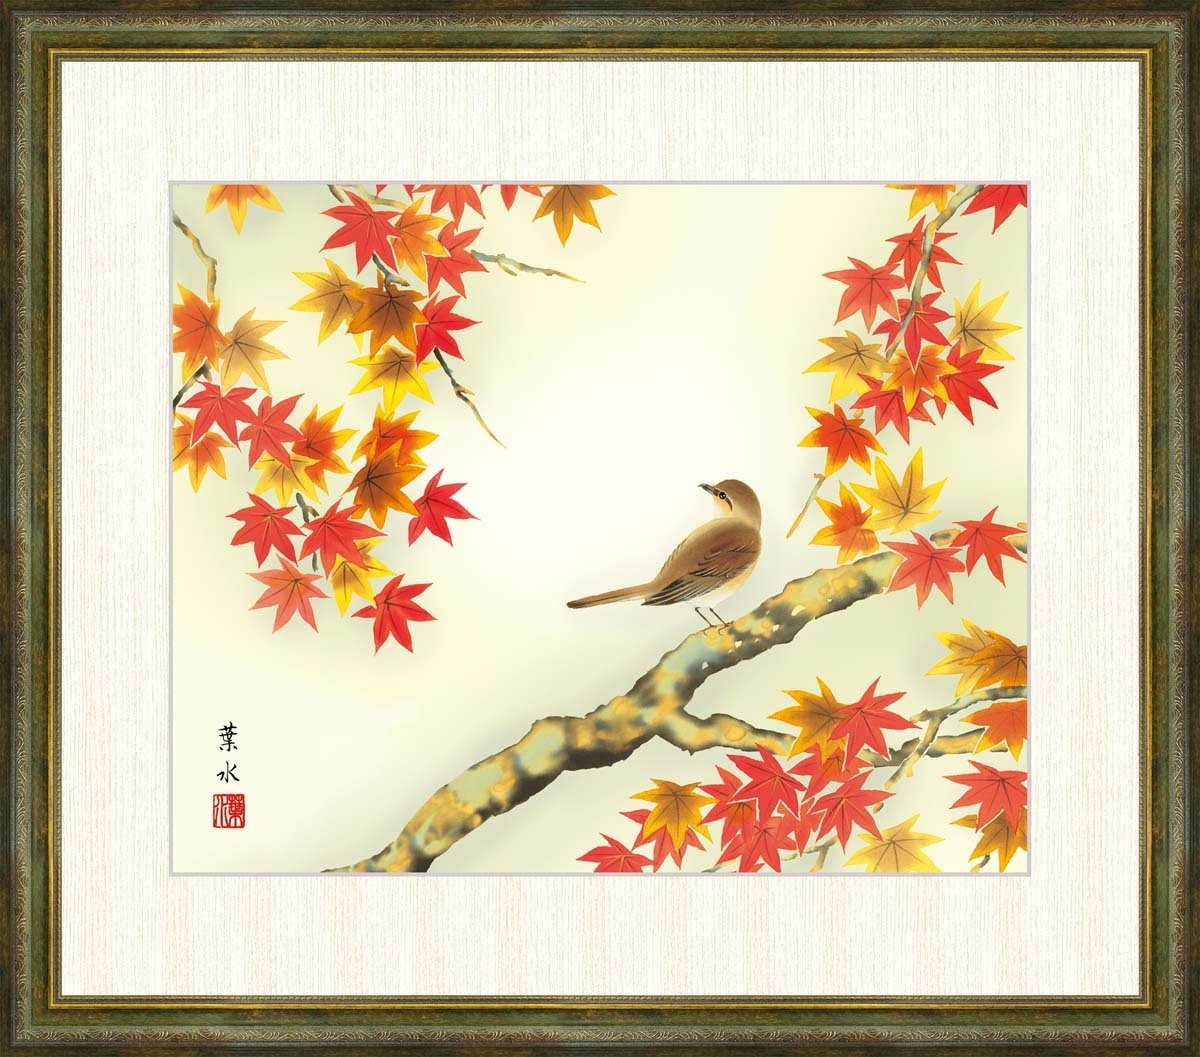 고화질 디지털 인쇄 액자 그림 Little Birds in Autumn Leaves by Yosui Ogata F8, 삽화, 인쇄, 다른 사람